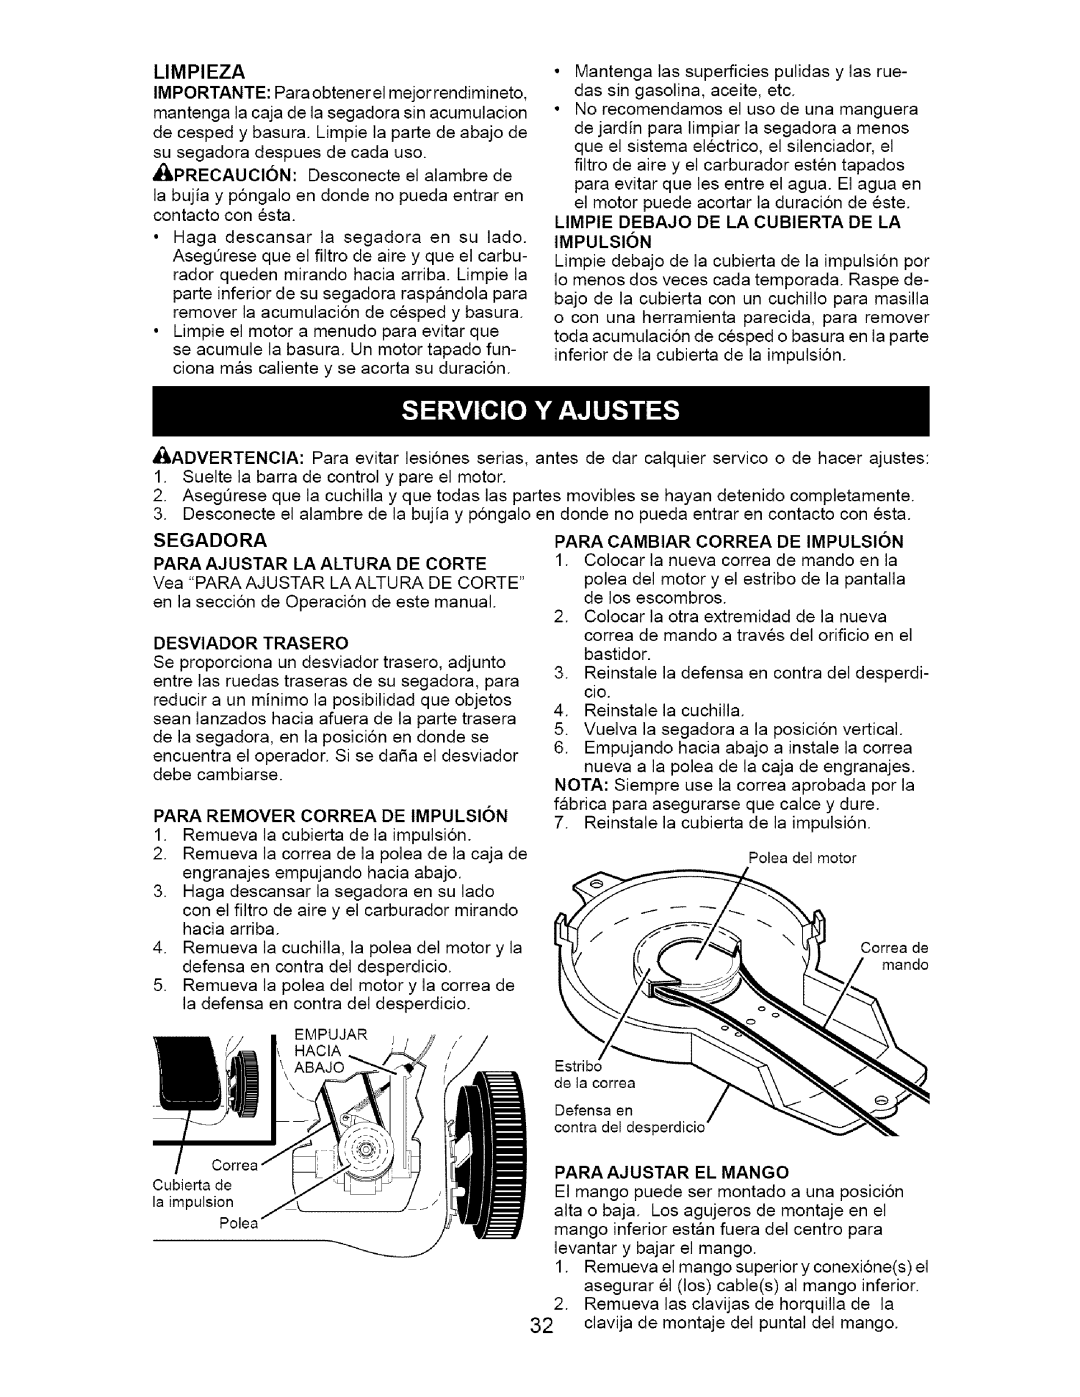 Craftsman 917.376671 owner manual Segadora, Para Ajustar La Altura De Corte, Para Remover Correa De Impulsion 